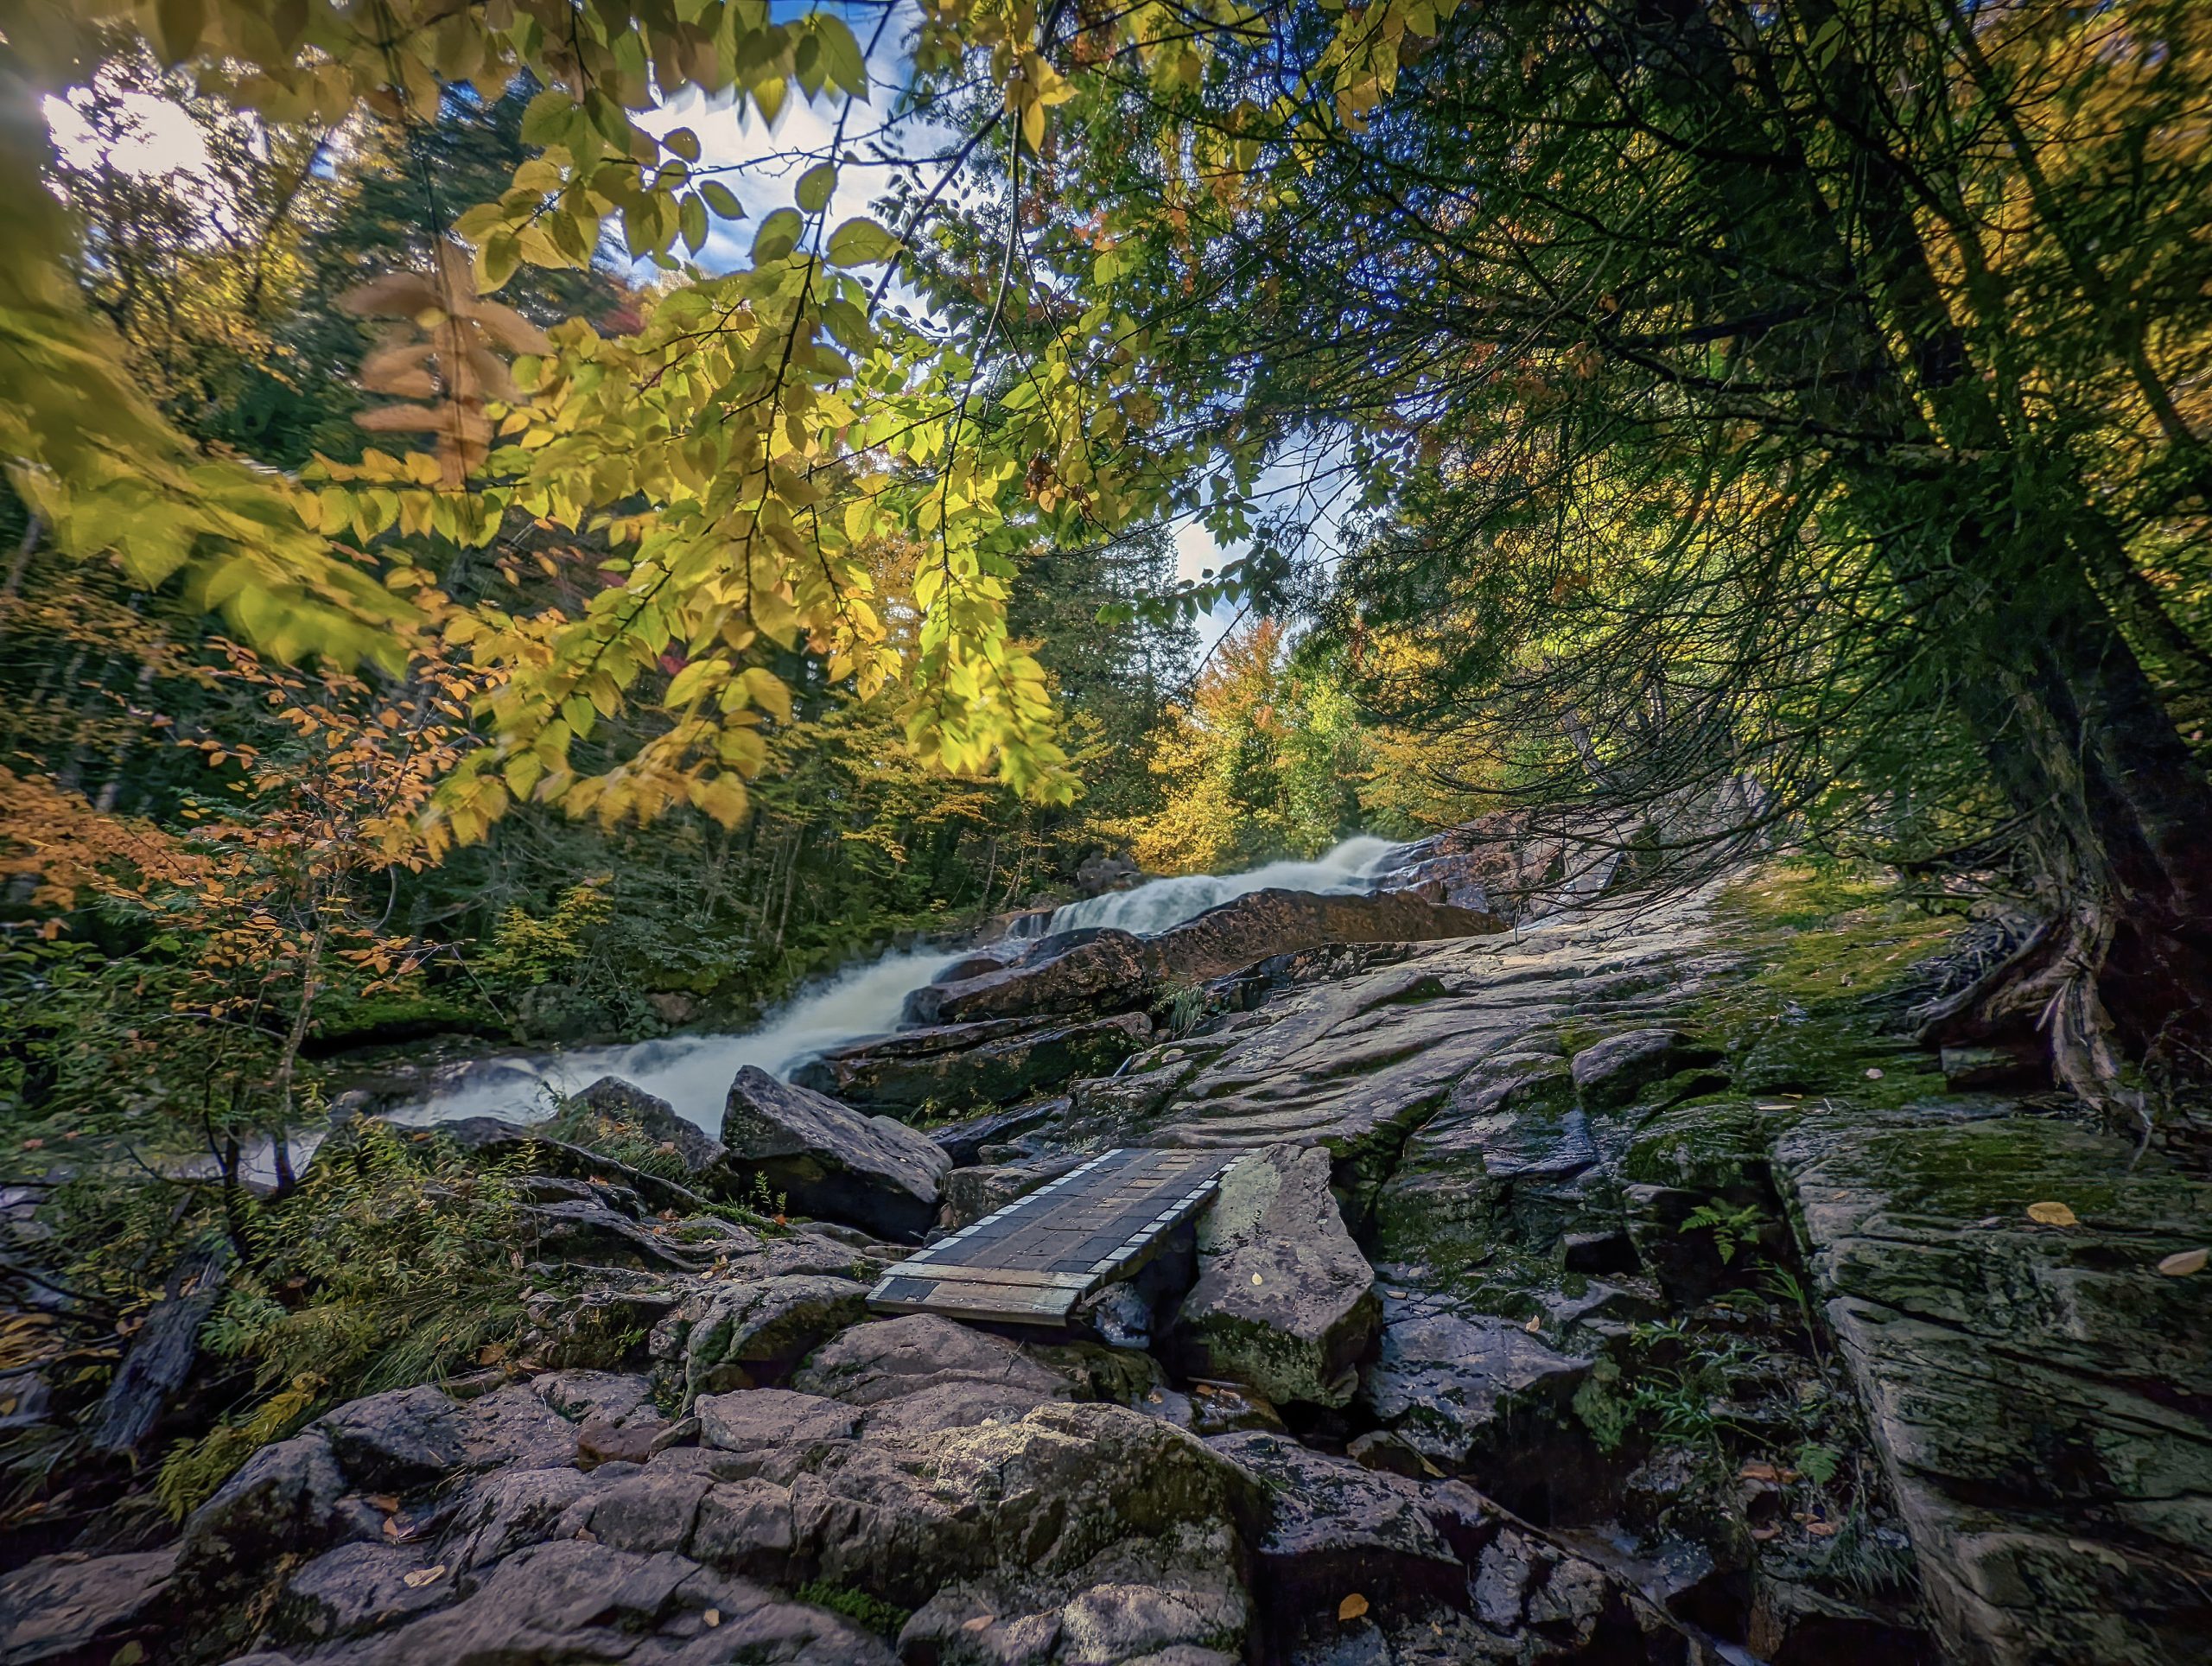 Paysage du sentier la Légende, l'un des sentiers les plus épiques au Québec, avec son parcours rocheux, sa chute, et sa nature verdoyante.